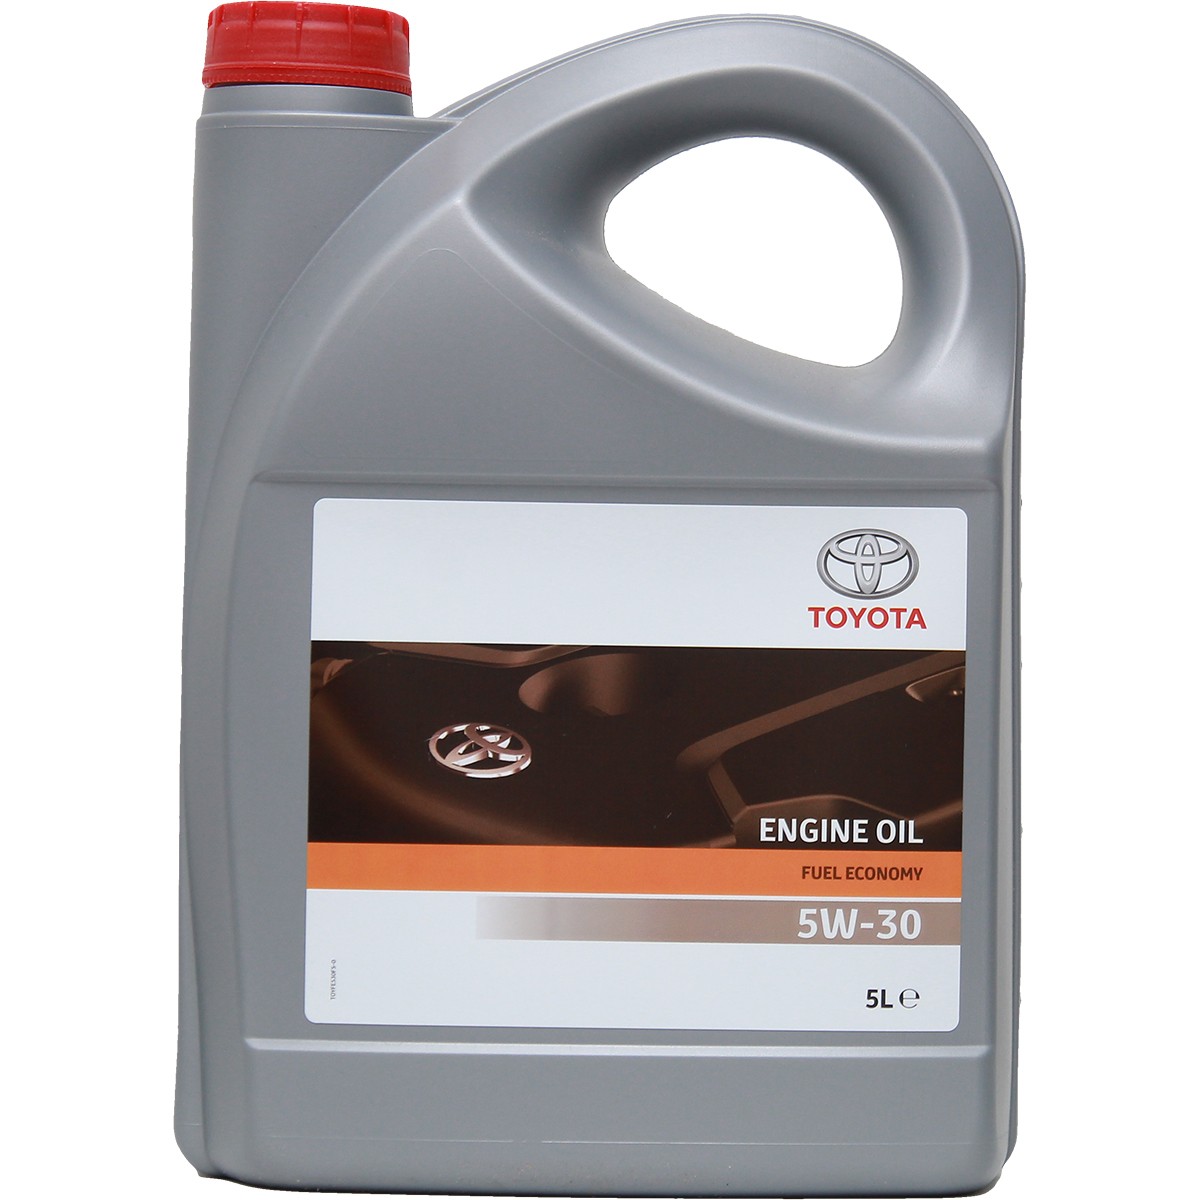 Buy Car oil TOYOTA diesel 08880-80845 Fuel Economy 5W-30, 5l